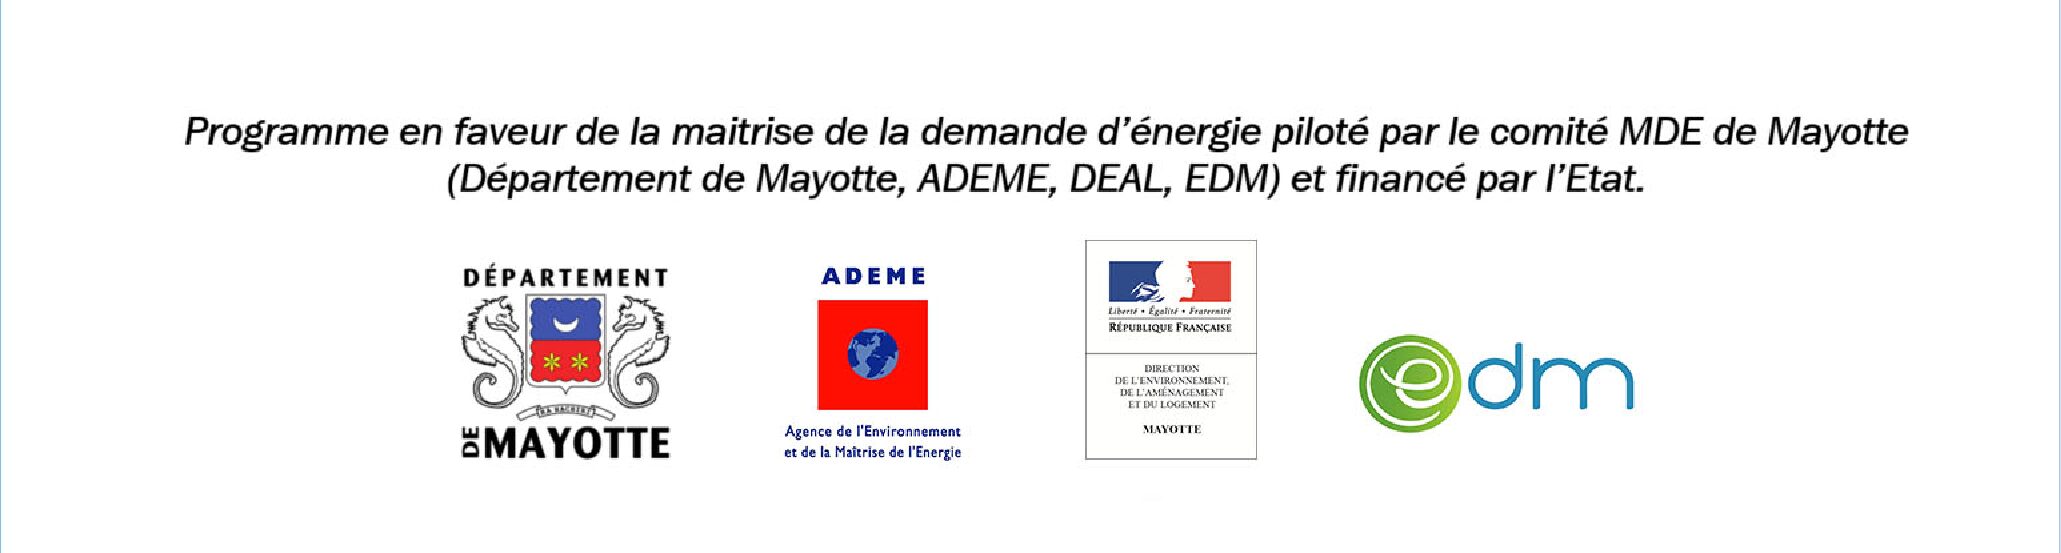 Programme en faveur de la maitrise de la demande d'energie piloté par le comité MDE de Mayotte (département de Mayotte, ADEME, DEAL, EDM) et financé par l'Etat.